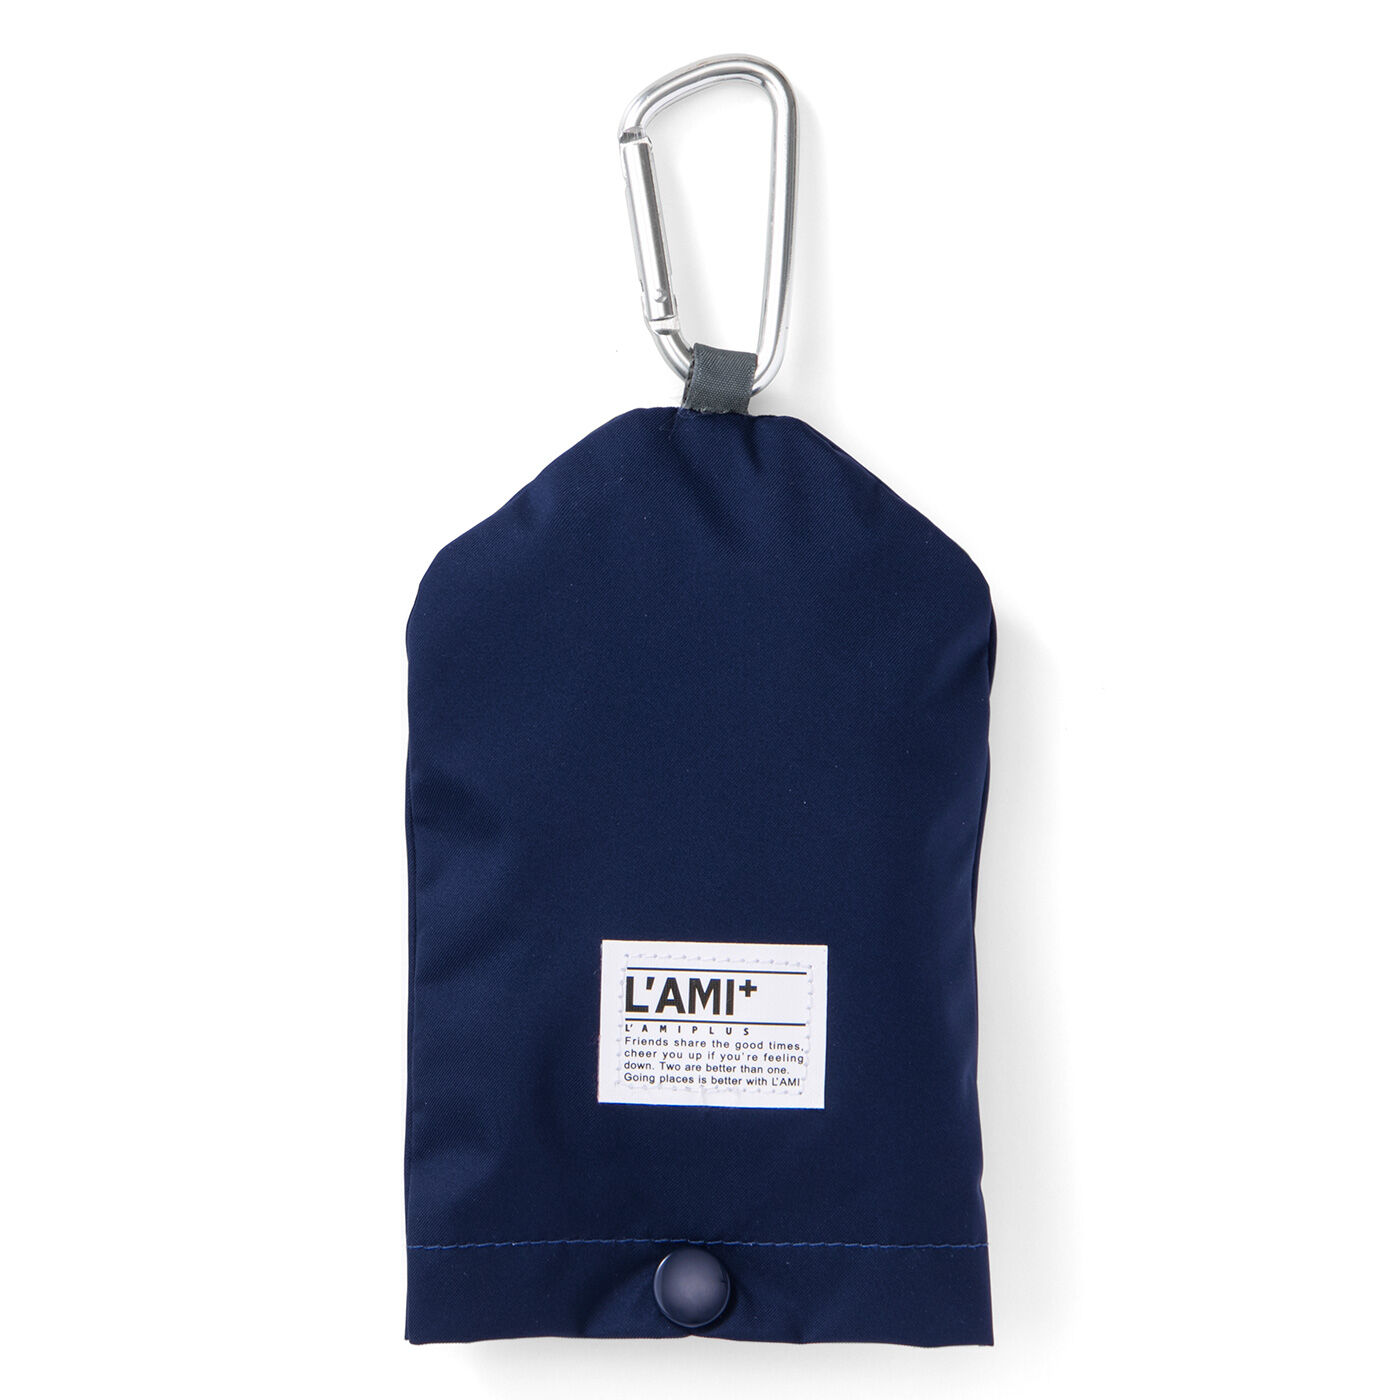 L'AMIPLUS|ラミプリュス　水分を吸収しながらスマートIN！ 隣の人も自分もぬれない スリム傘袋の会|たたむとコンパクト約60g　小さく収まるカラビナ付き収納ケースをセット。バッグの持ち手などに下げられます。